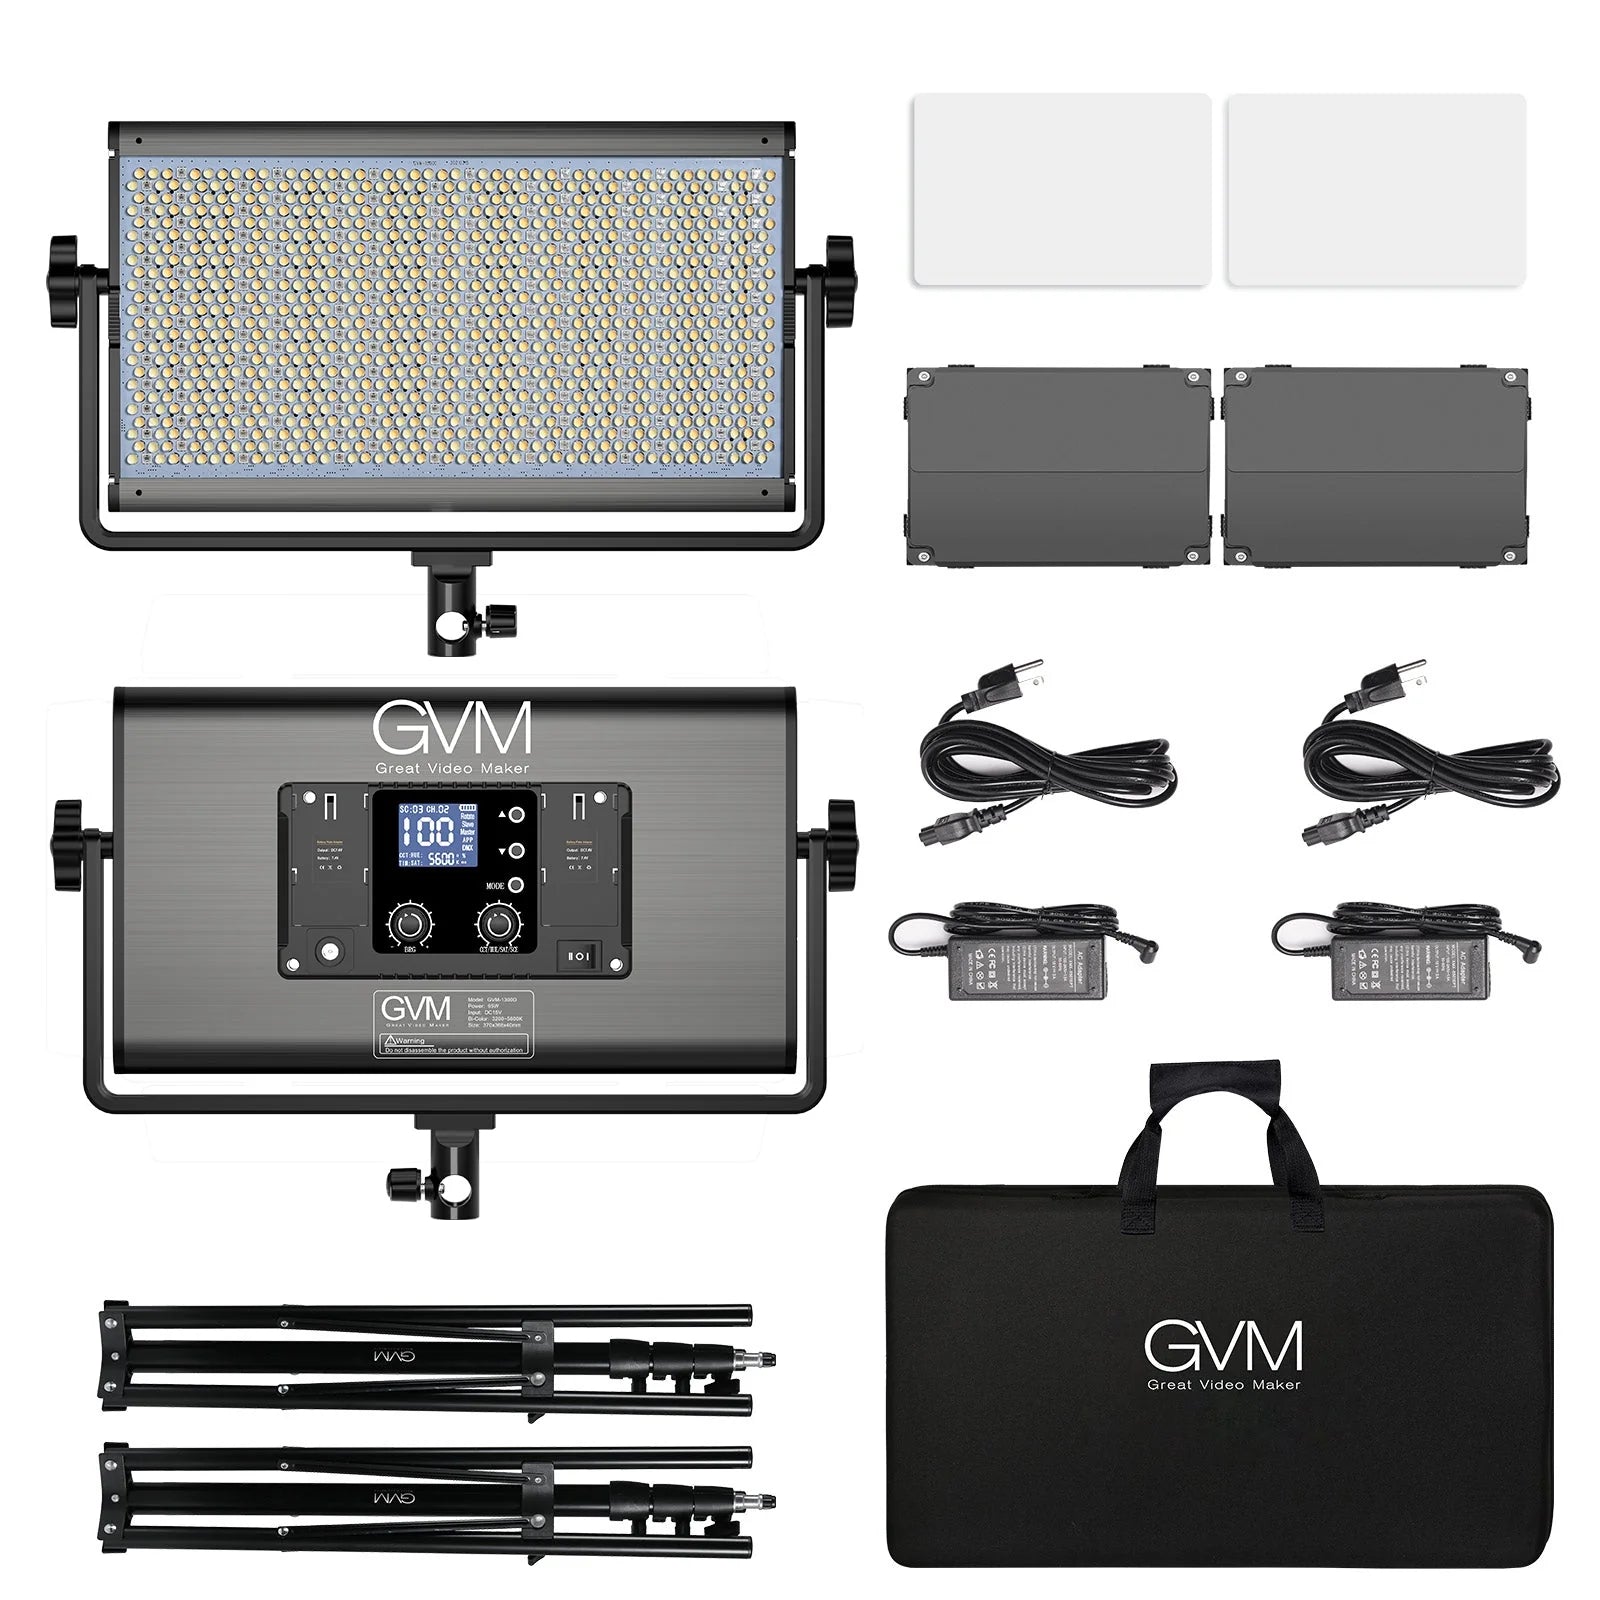 GVM 1500D-RGB LED Studio Video Light Kit - mylensball.com.au